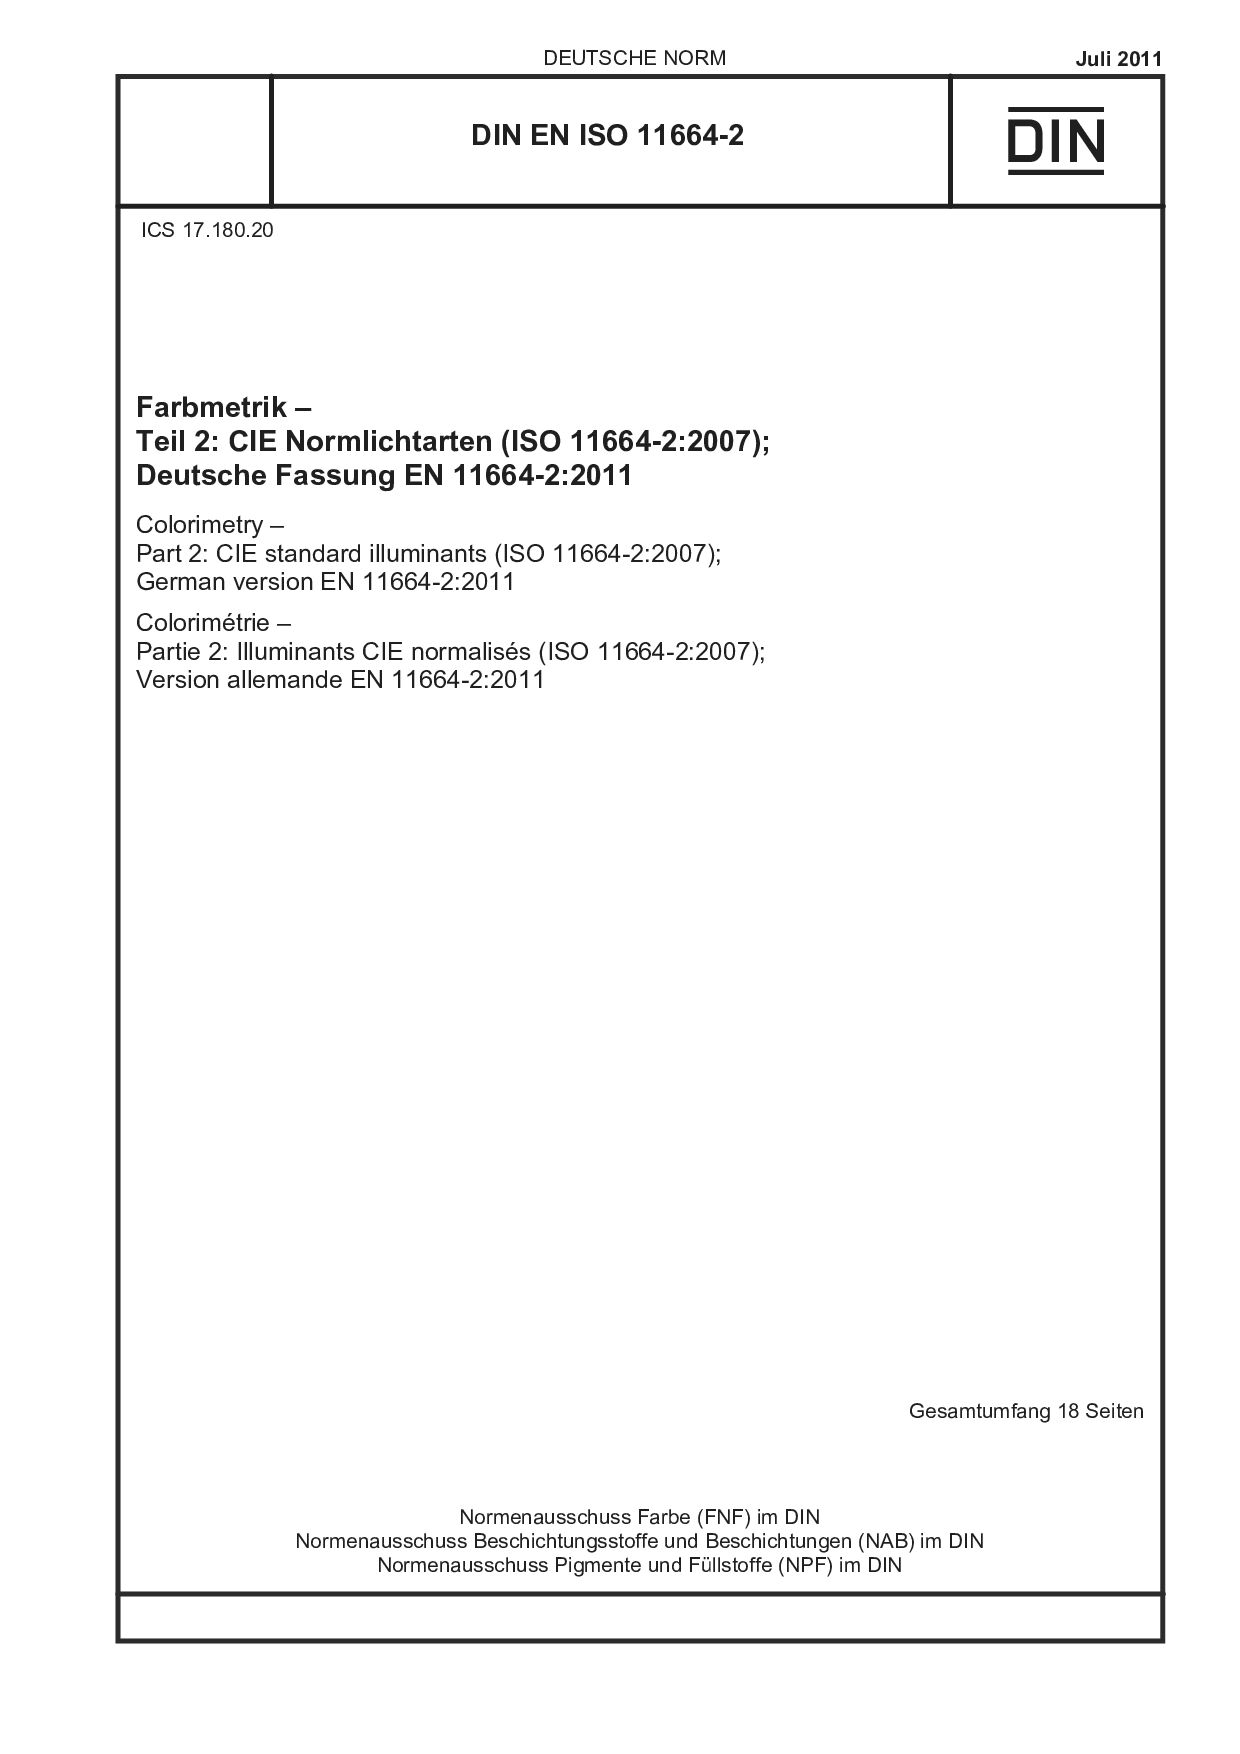 DIN EN ISO 11664-2:2011